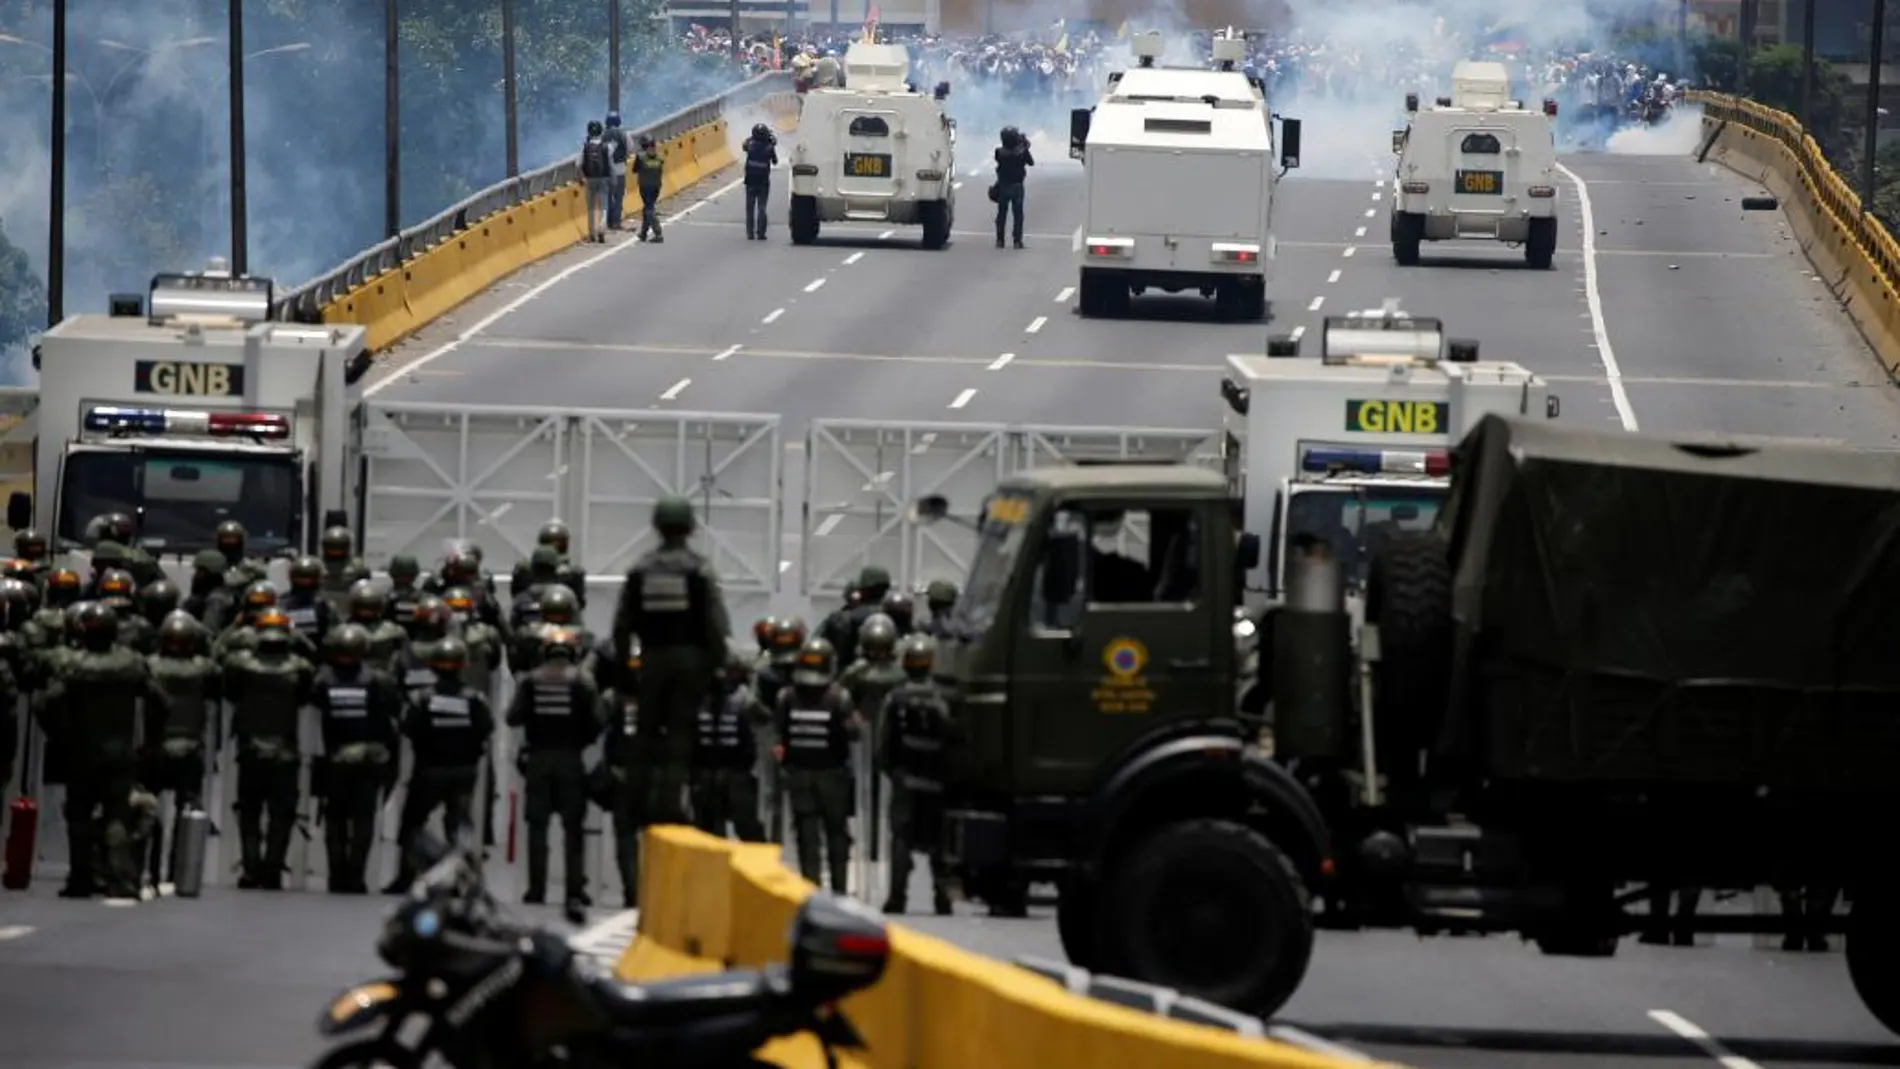 La Guardia Nacional Bolivariana corta el acceso a los manifestantes por las calles de Caracas.